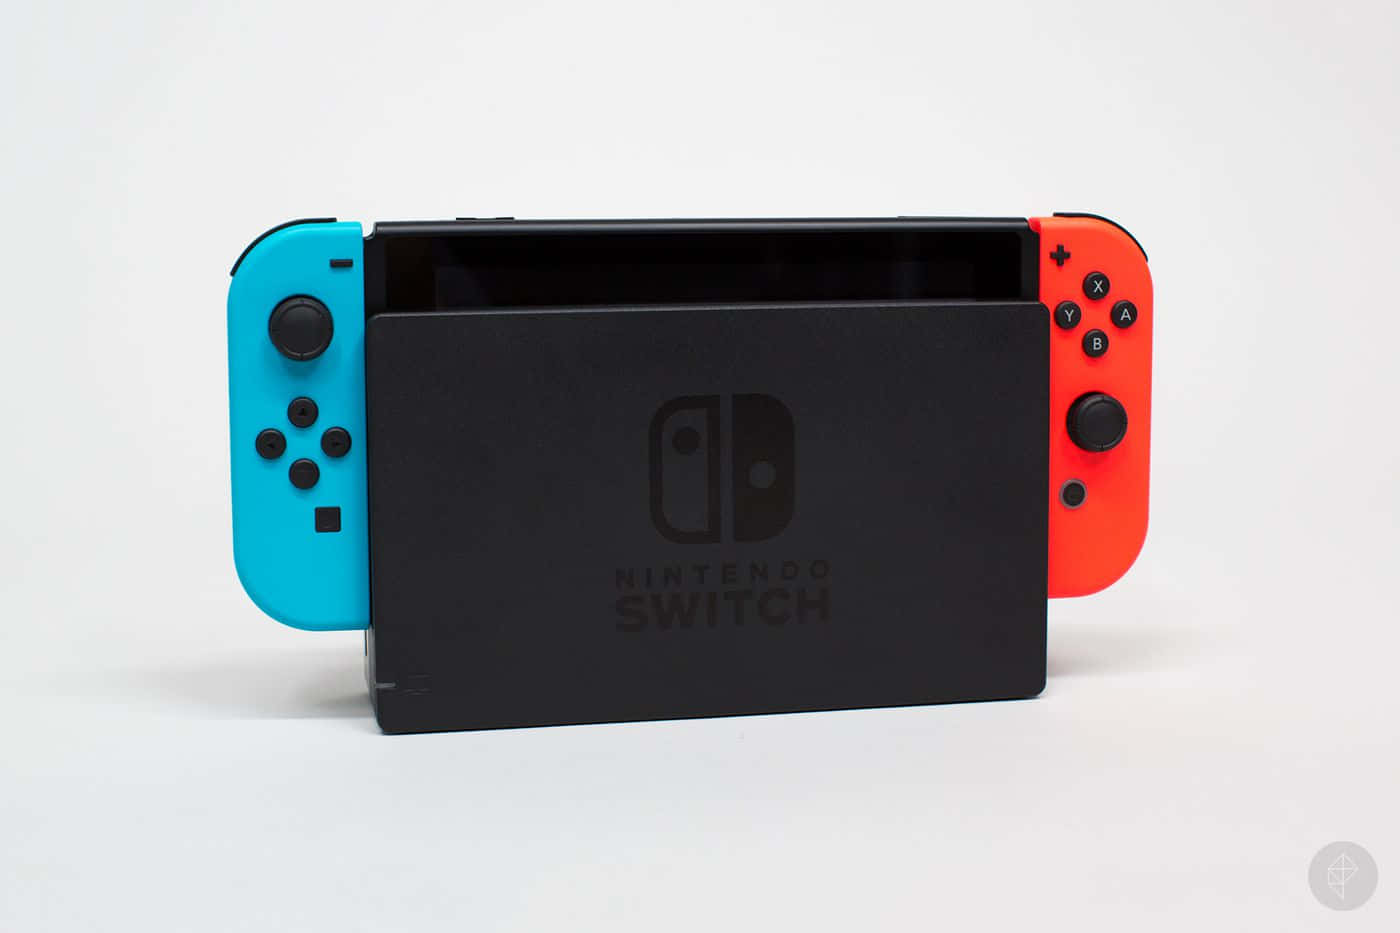 Experimentala Nueva Generación De Videojuegos Con El Nintendo Switch.